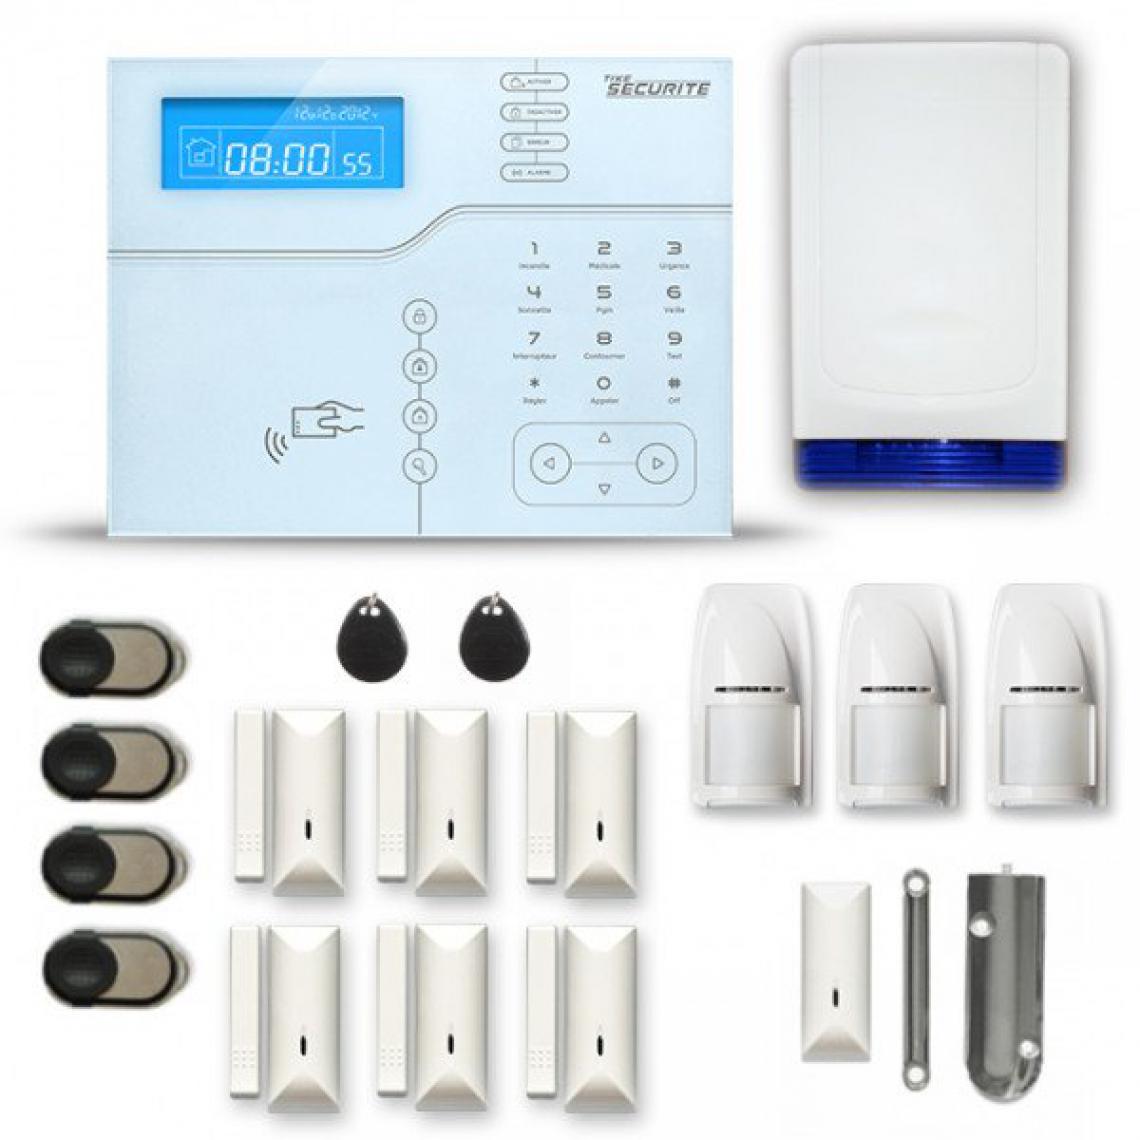 Tike Securite - Alarme maison sans fil SHB57 GSM/IP avec option GSM incluse - Alarme connectée